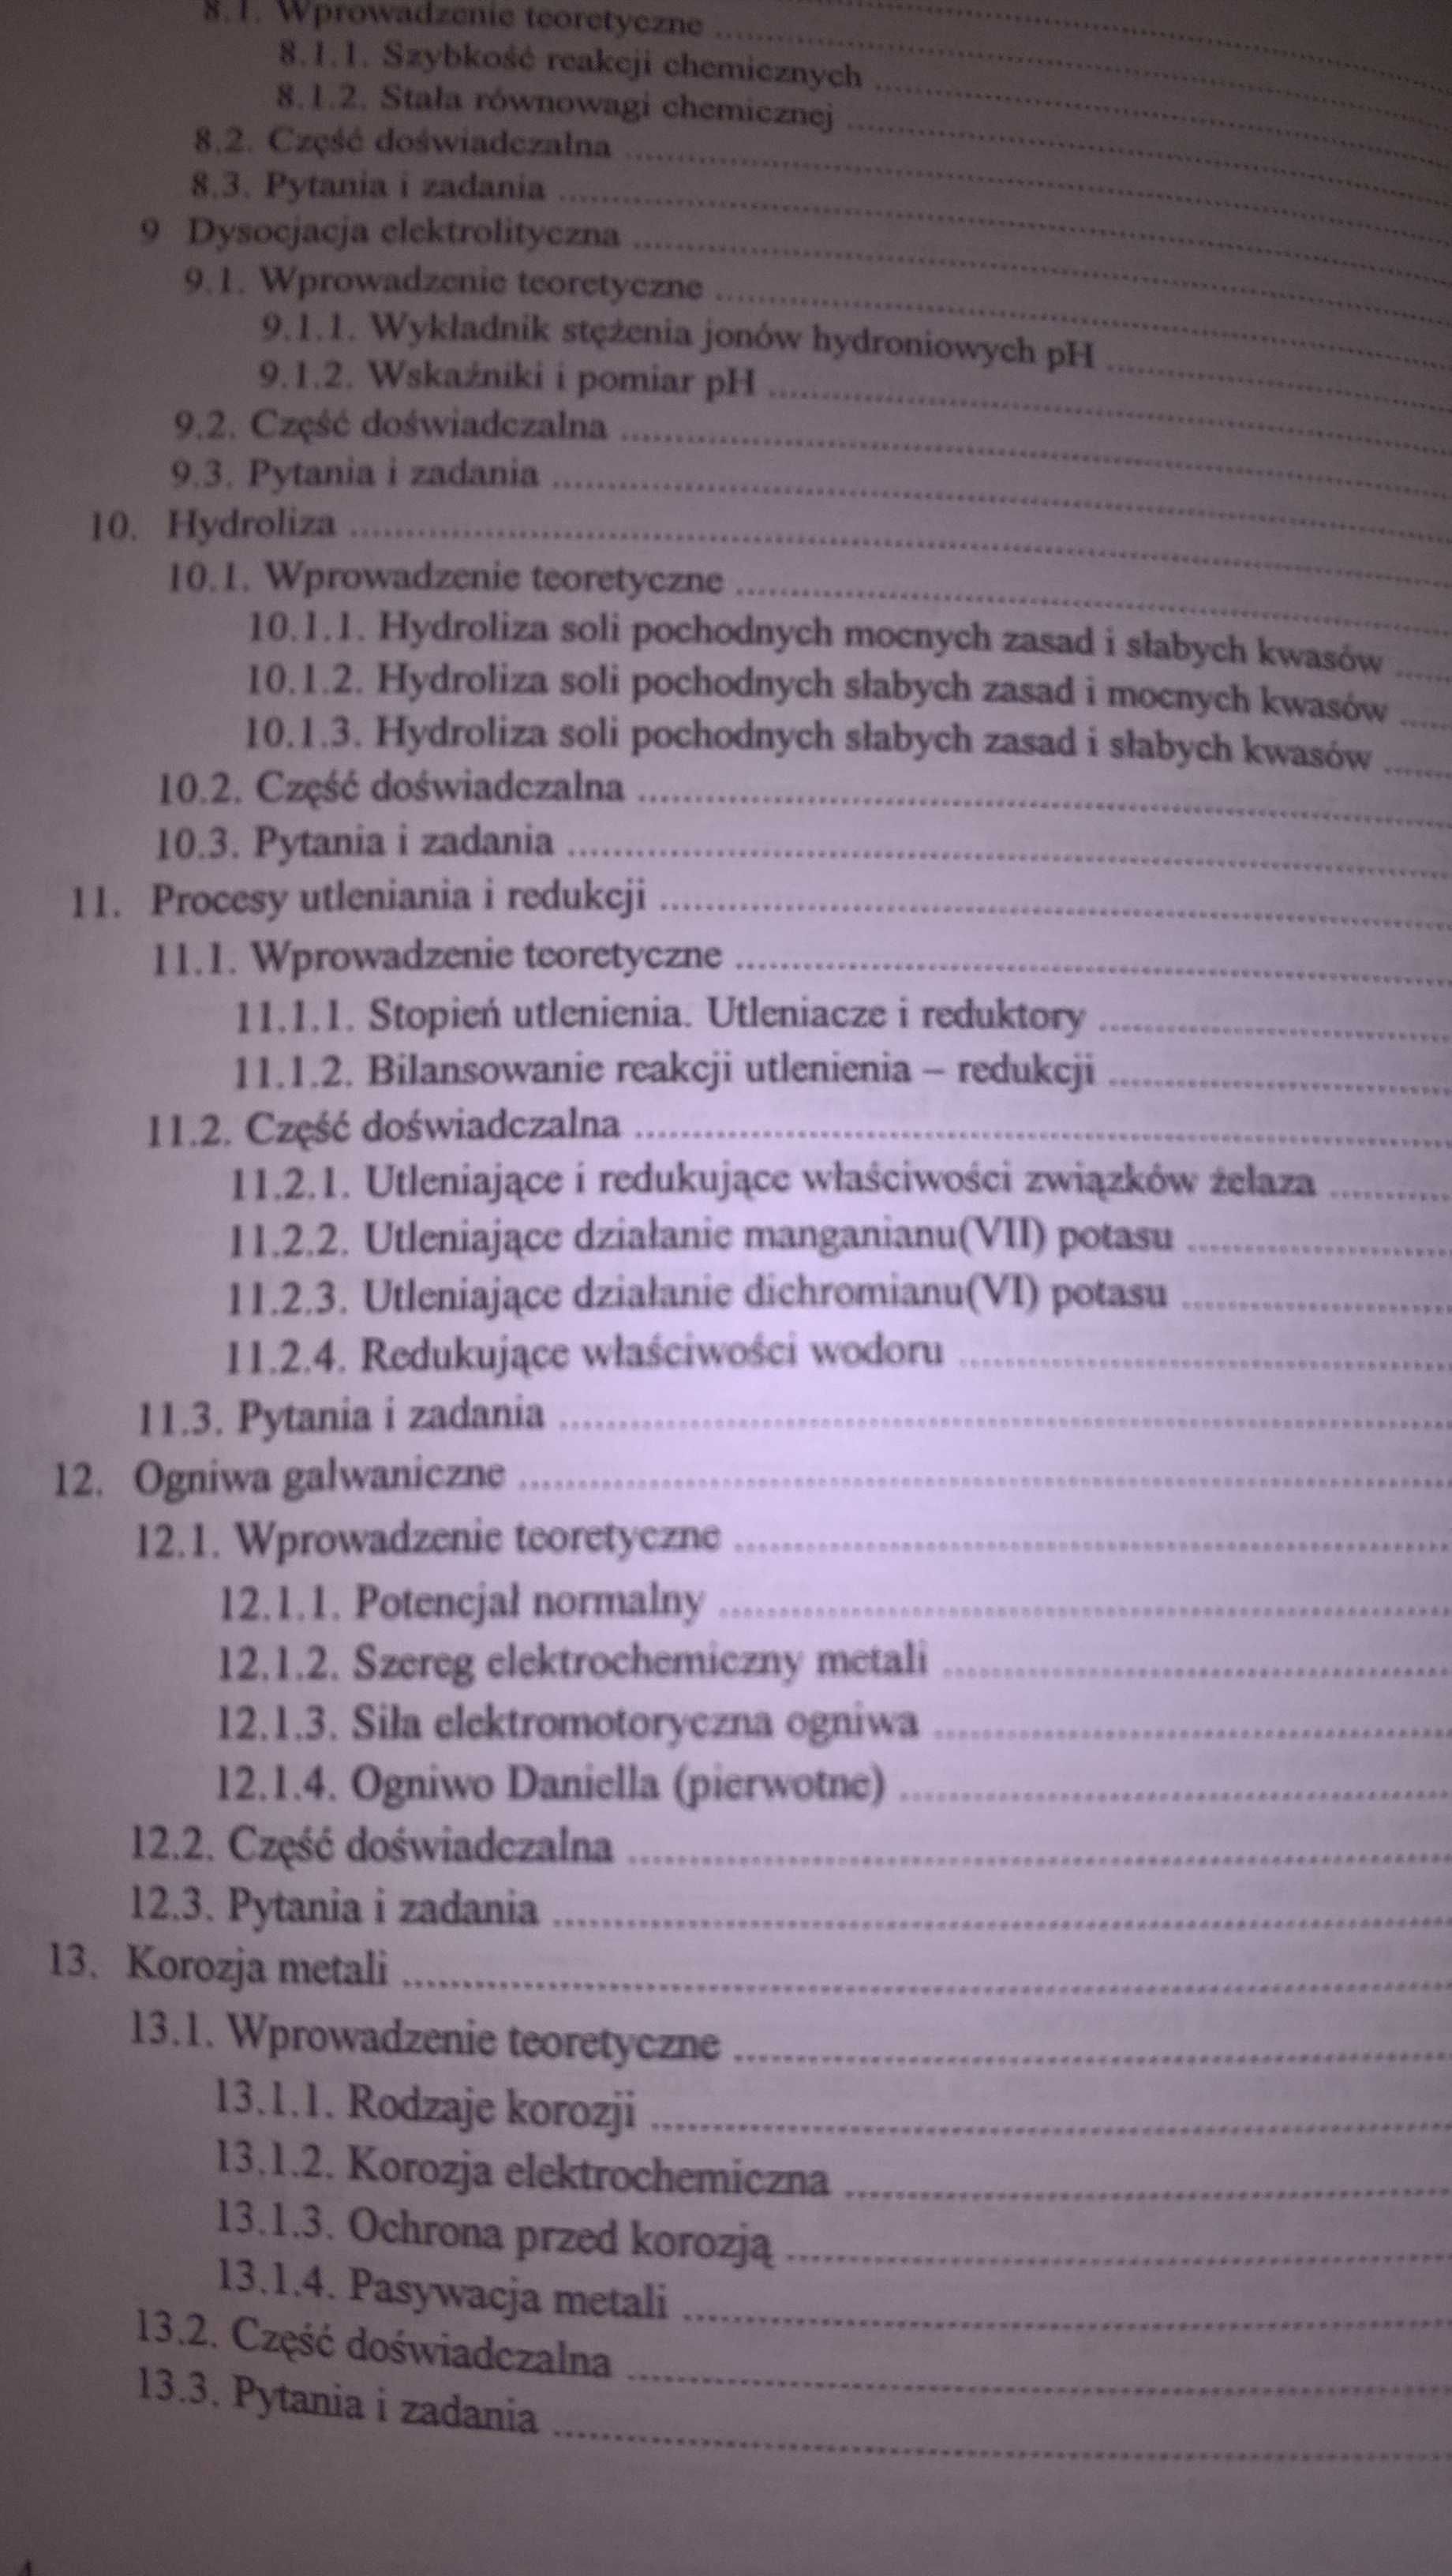 Ćwiczenia laboratoryjne z chemii ogólnej
E. Jagodzińska, Dziembowska